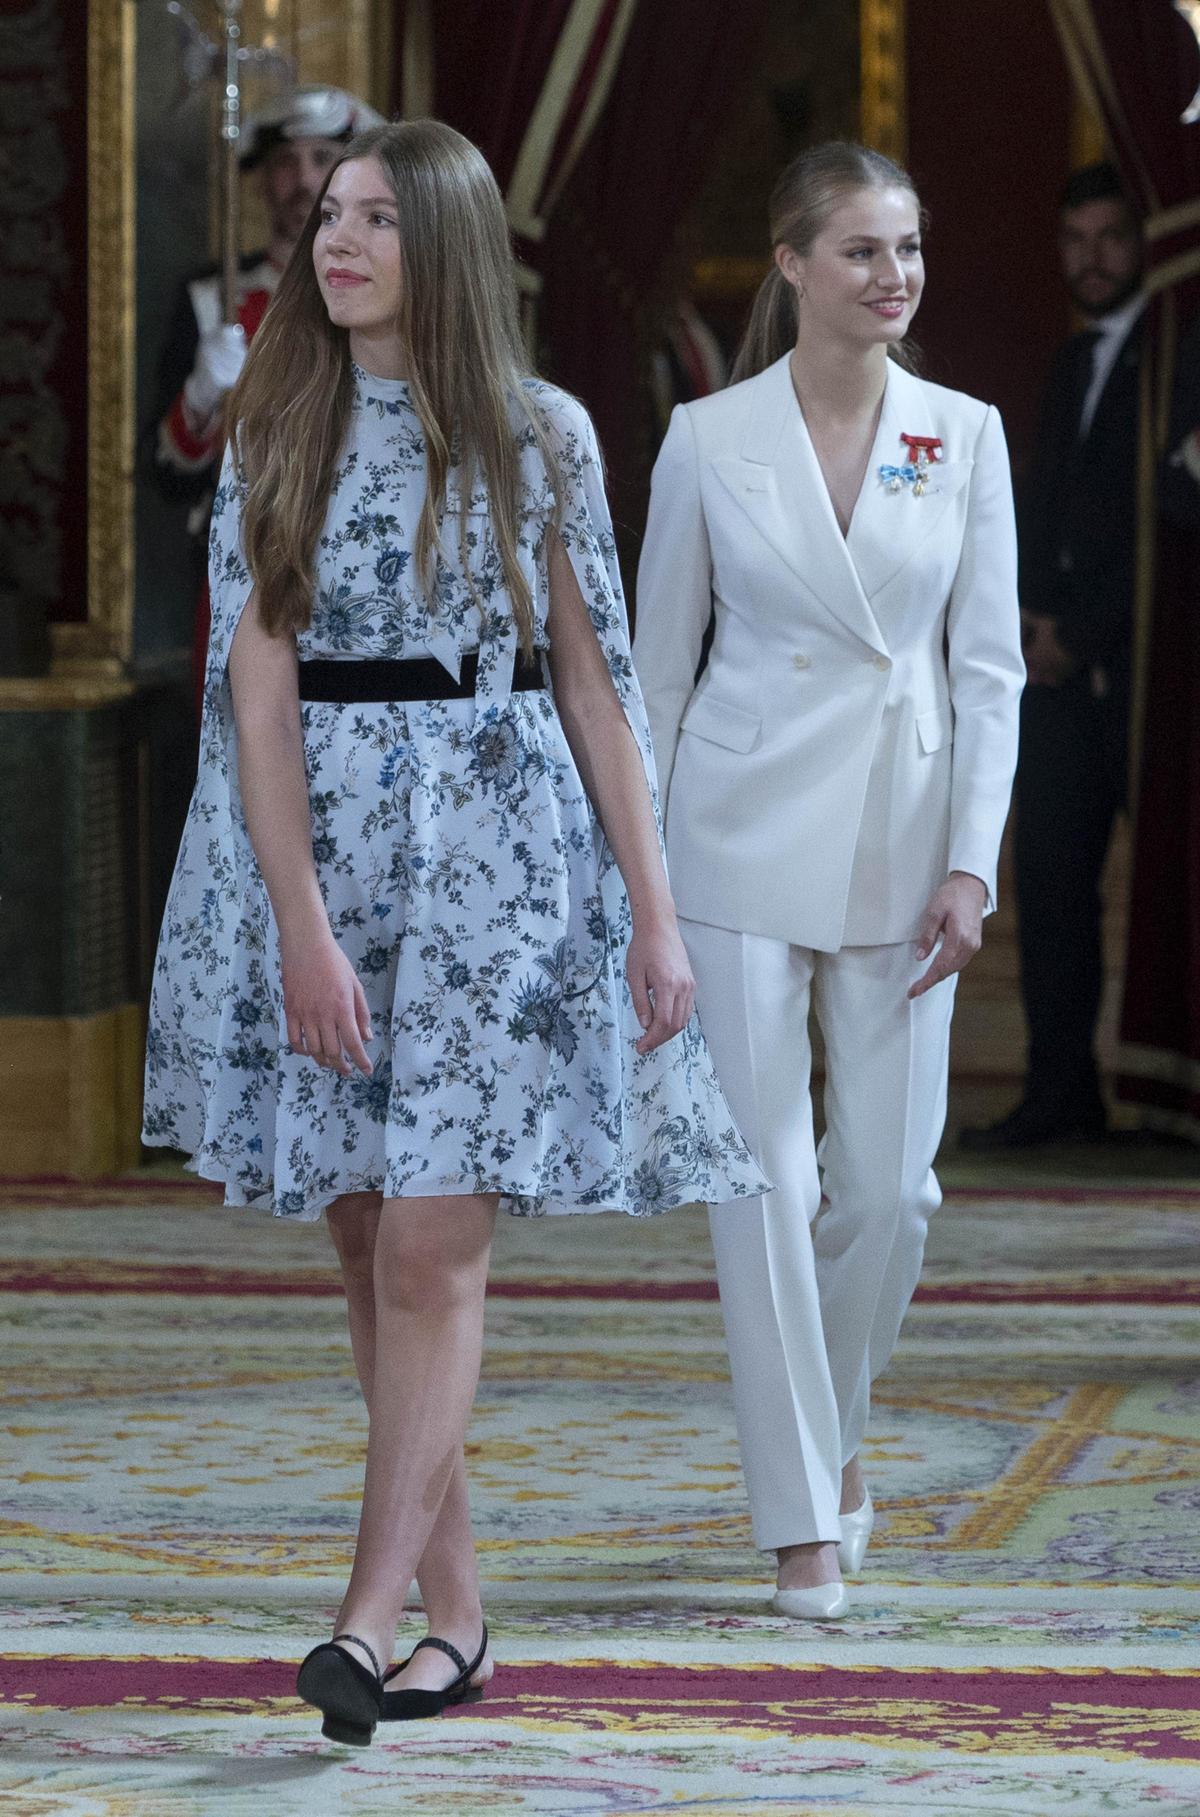 Sofía y Leonor, en el Palacio Real, donde se ha celebrado el almuerzo con ocasión del Juramento de la Constitución de la Princesa Leonor.